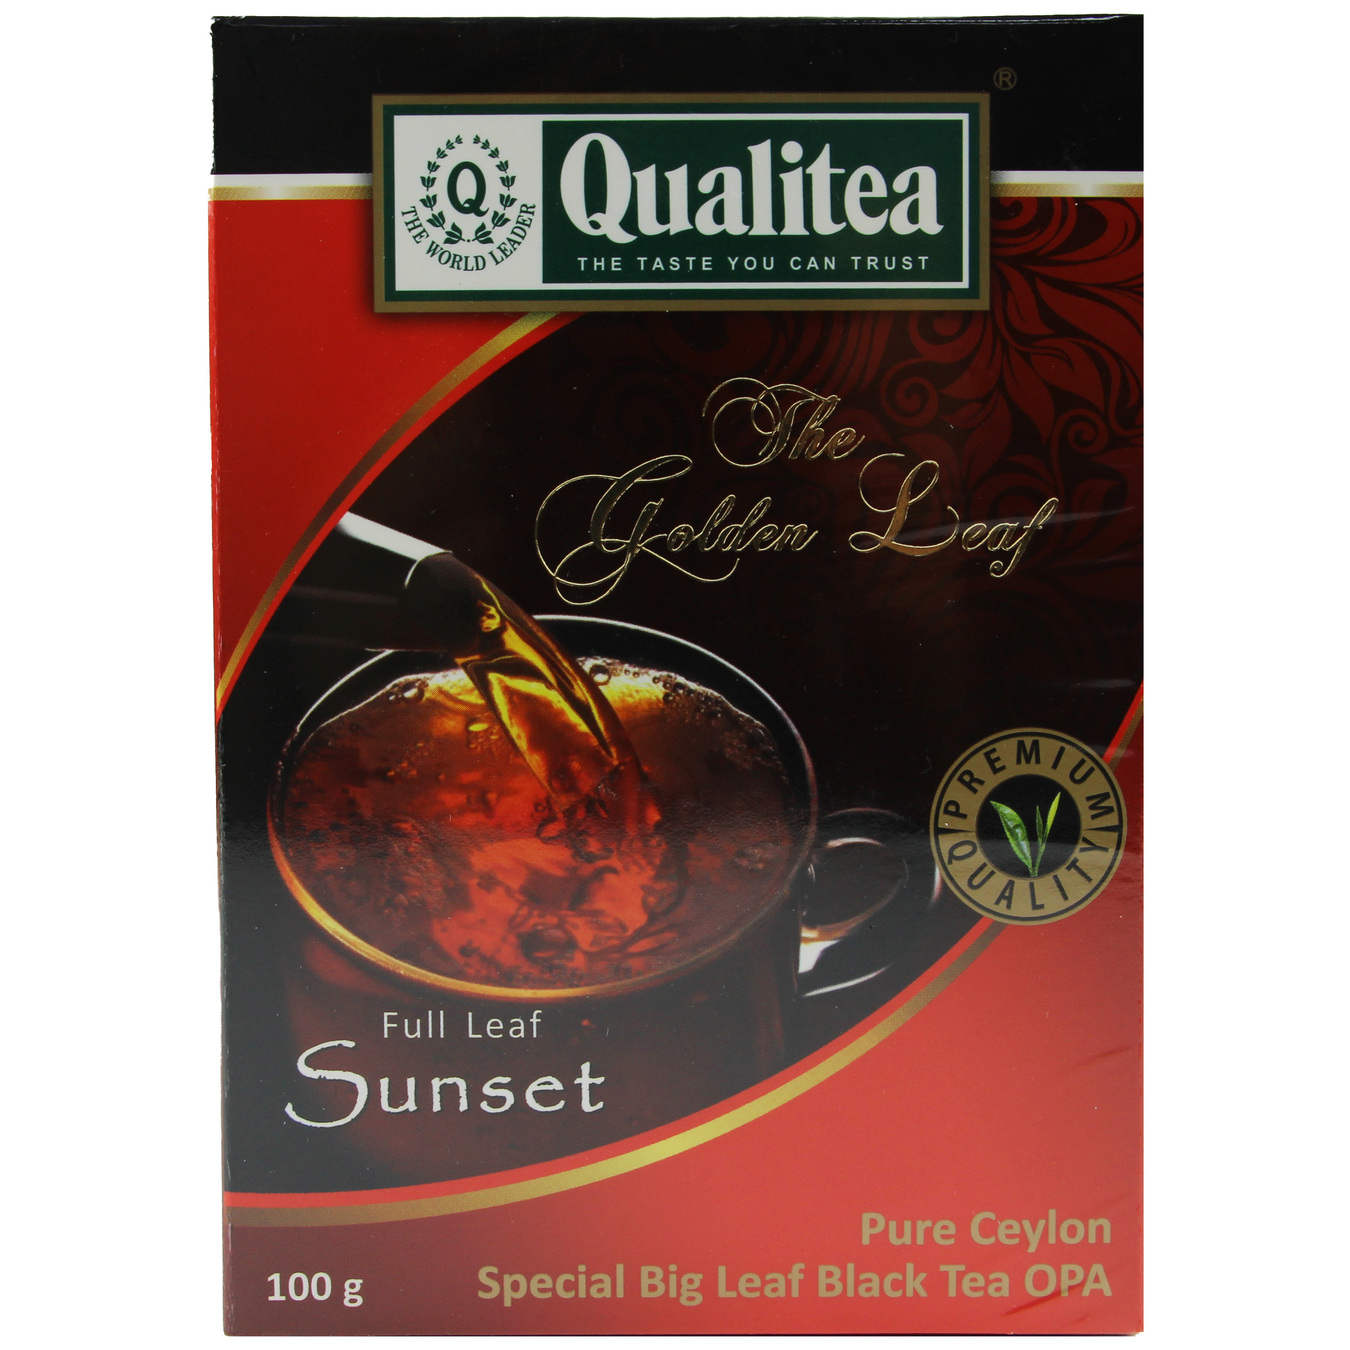 Qualitea Sunset Black Label Tea 100g